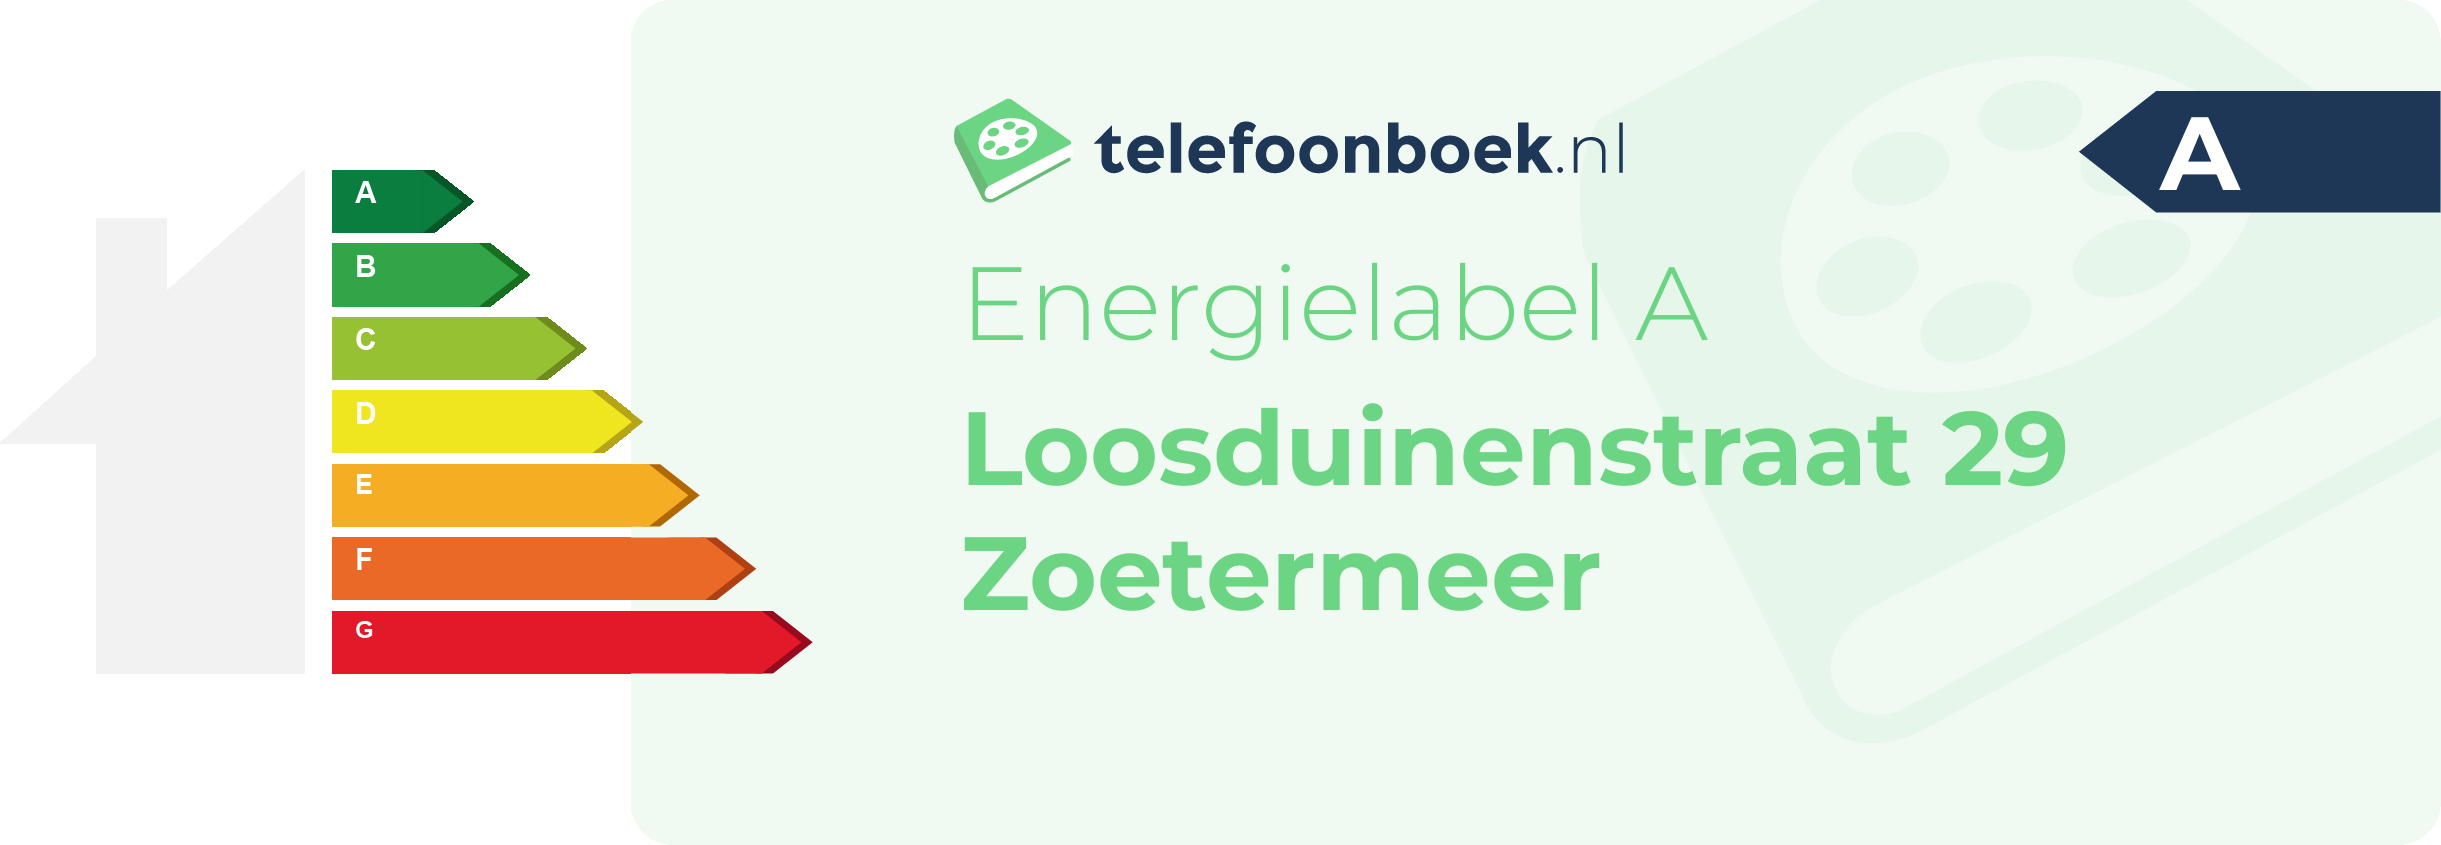 Energielabel Loosduinenstraat 29 Zoetermeer